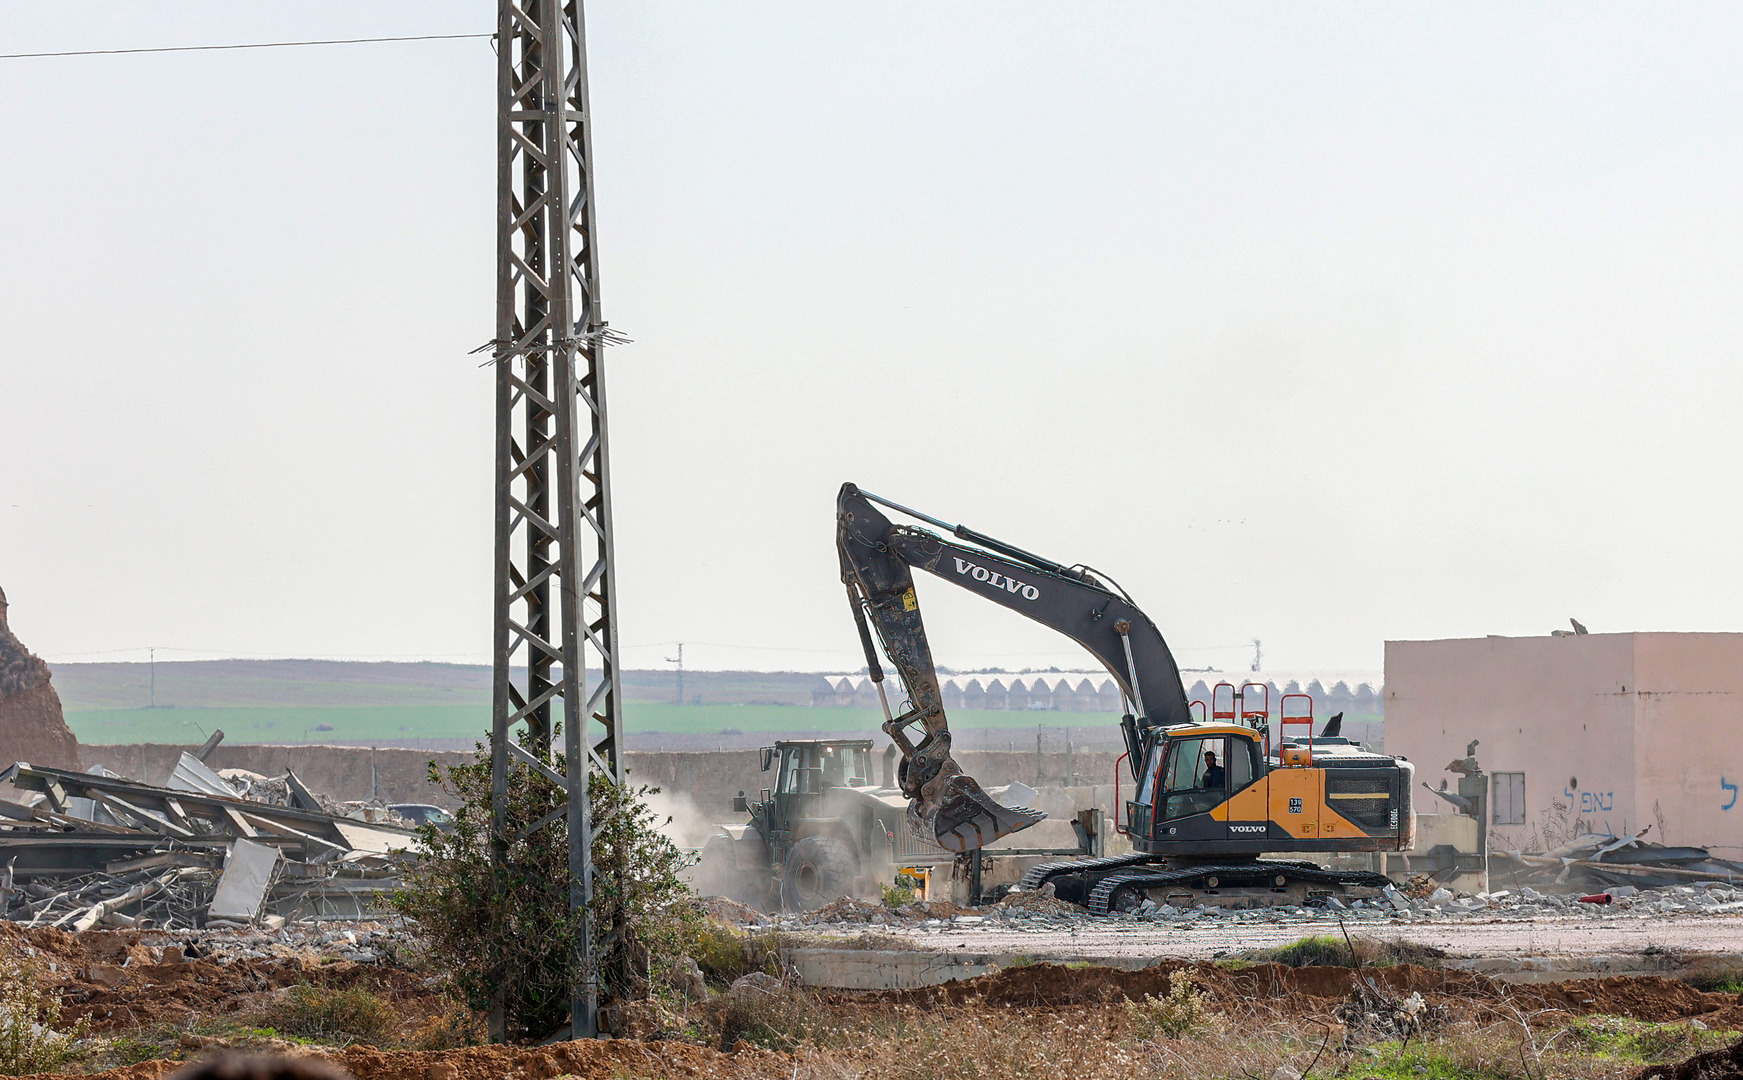 إسرائيل تهدم نحو 50 منزلا في صحراء النقب وبن غفير يتوعد بالمزيد